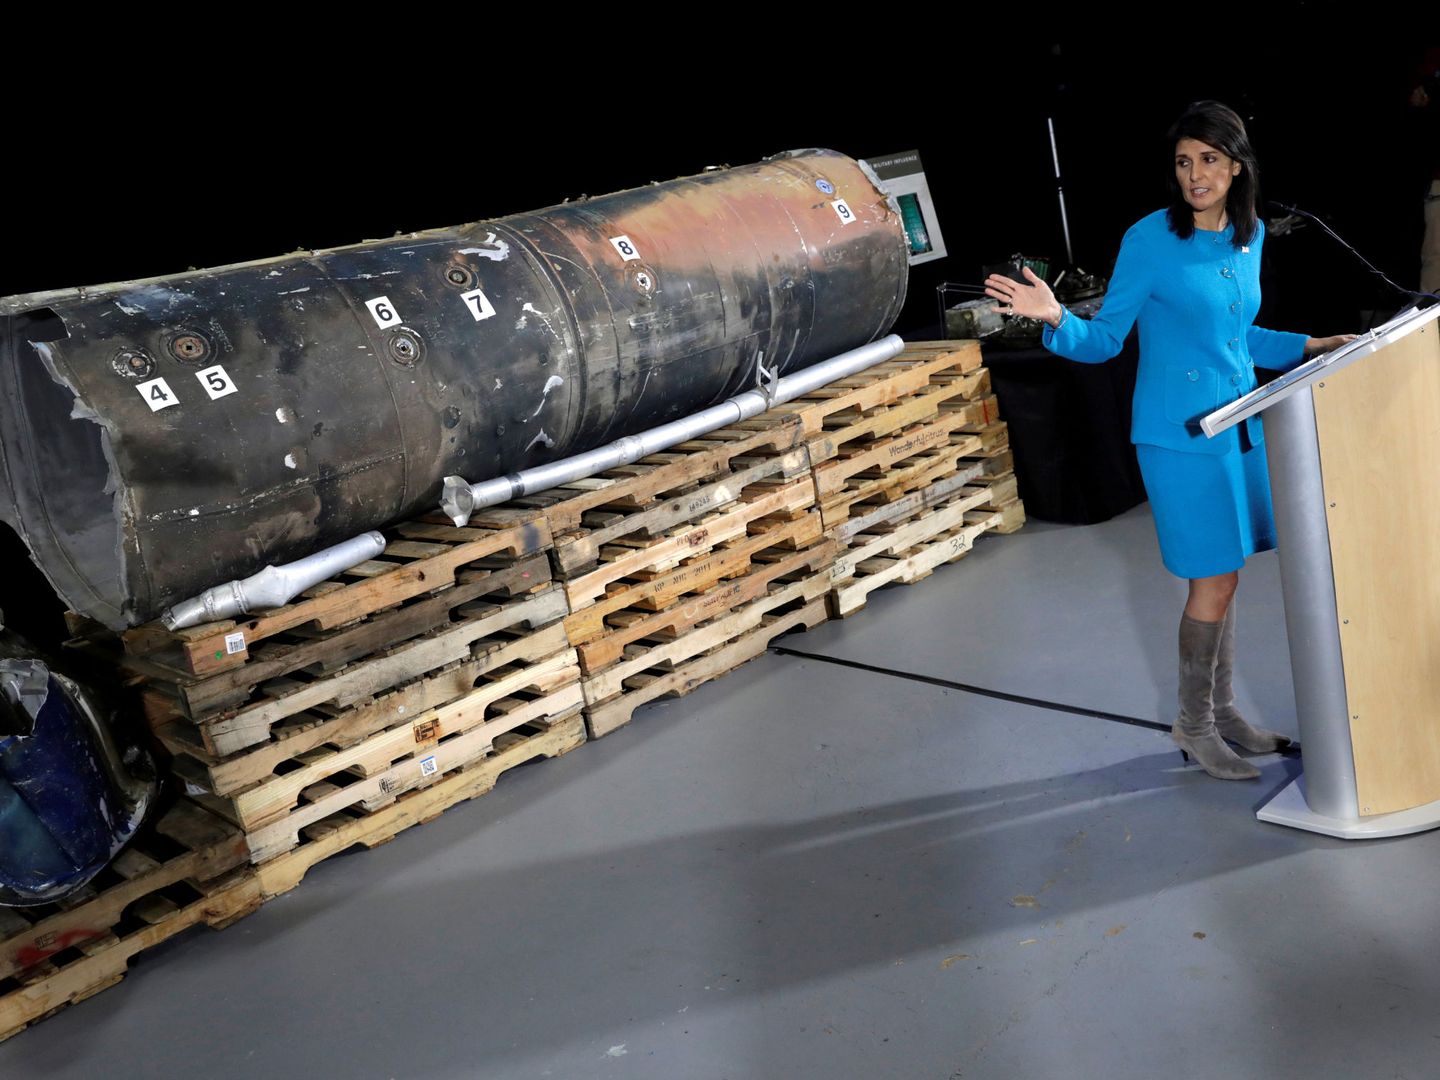 Nikki Haley señala los restos de un misil balístico iraní 'Qiam' como prueba de la presunta implicación de Irán en la guerra de Yemen, en la base aérea de Anacostia-Bolling en Washington, el 14 de diciembre de 2017. (Reuters)